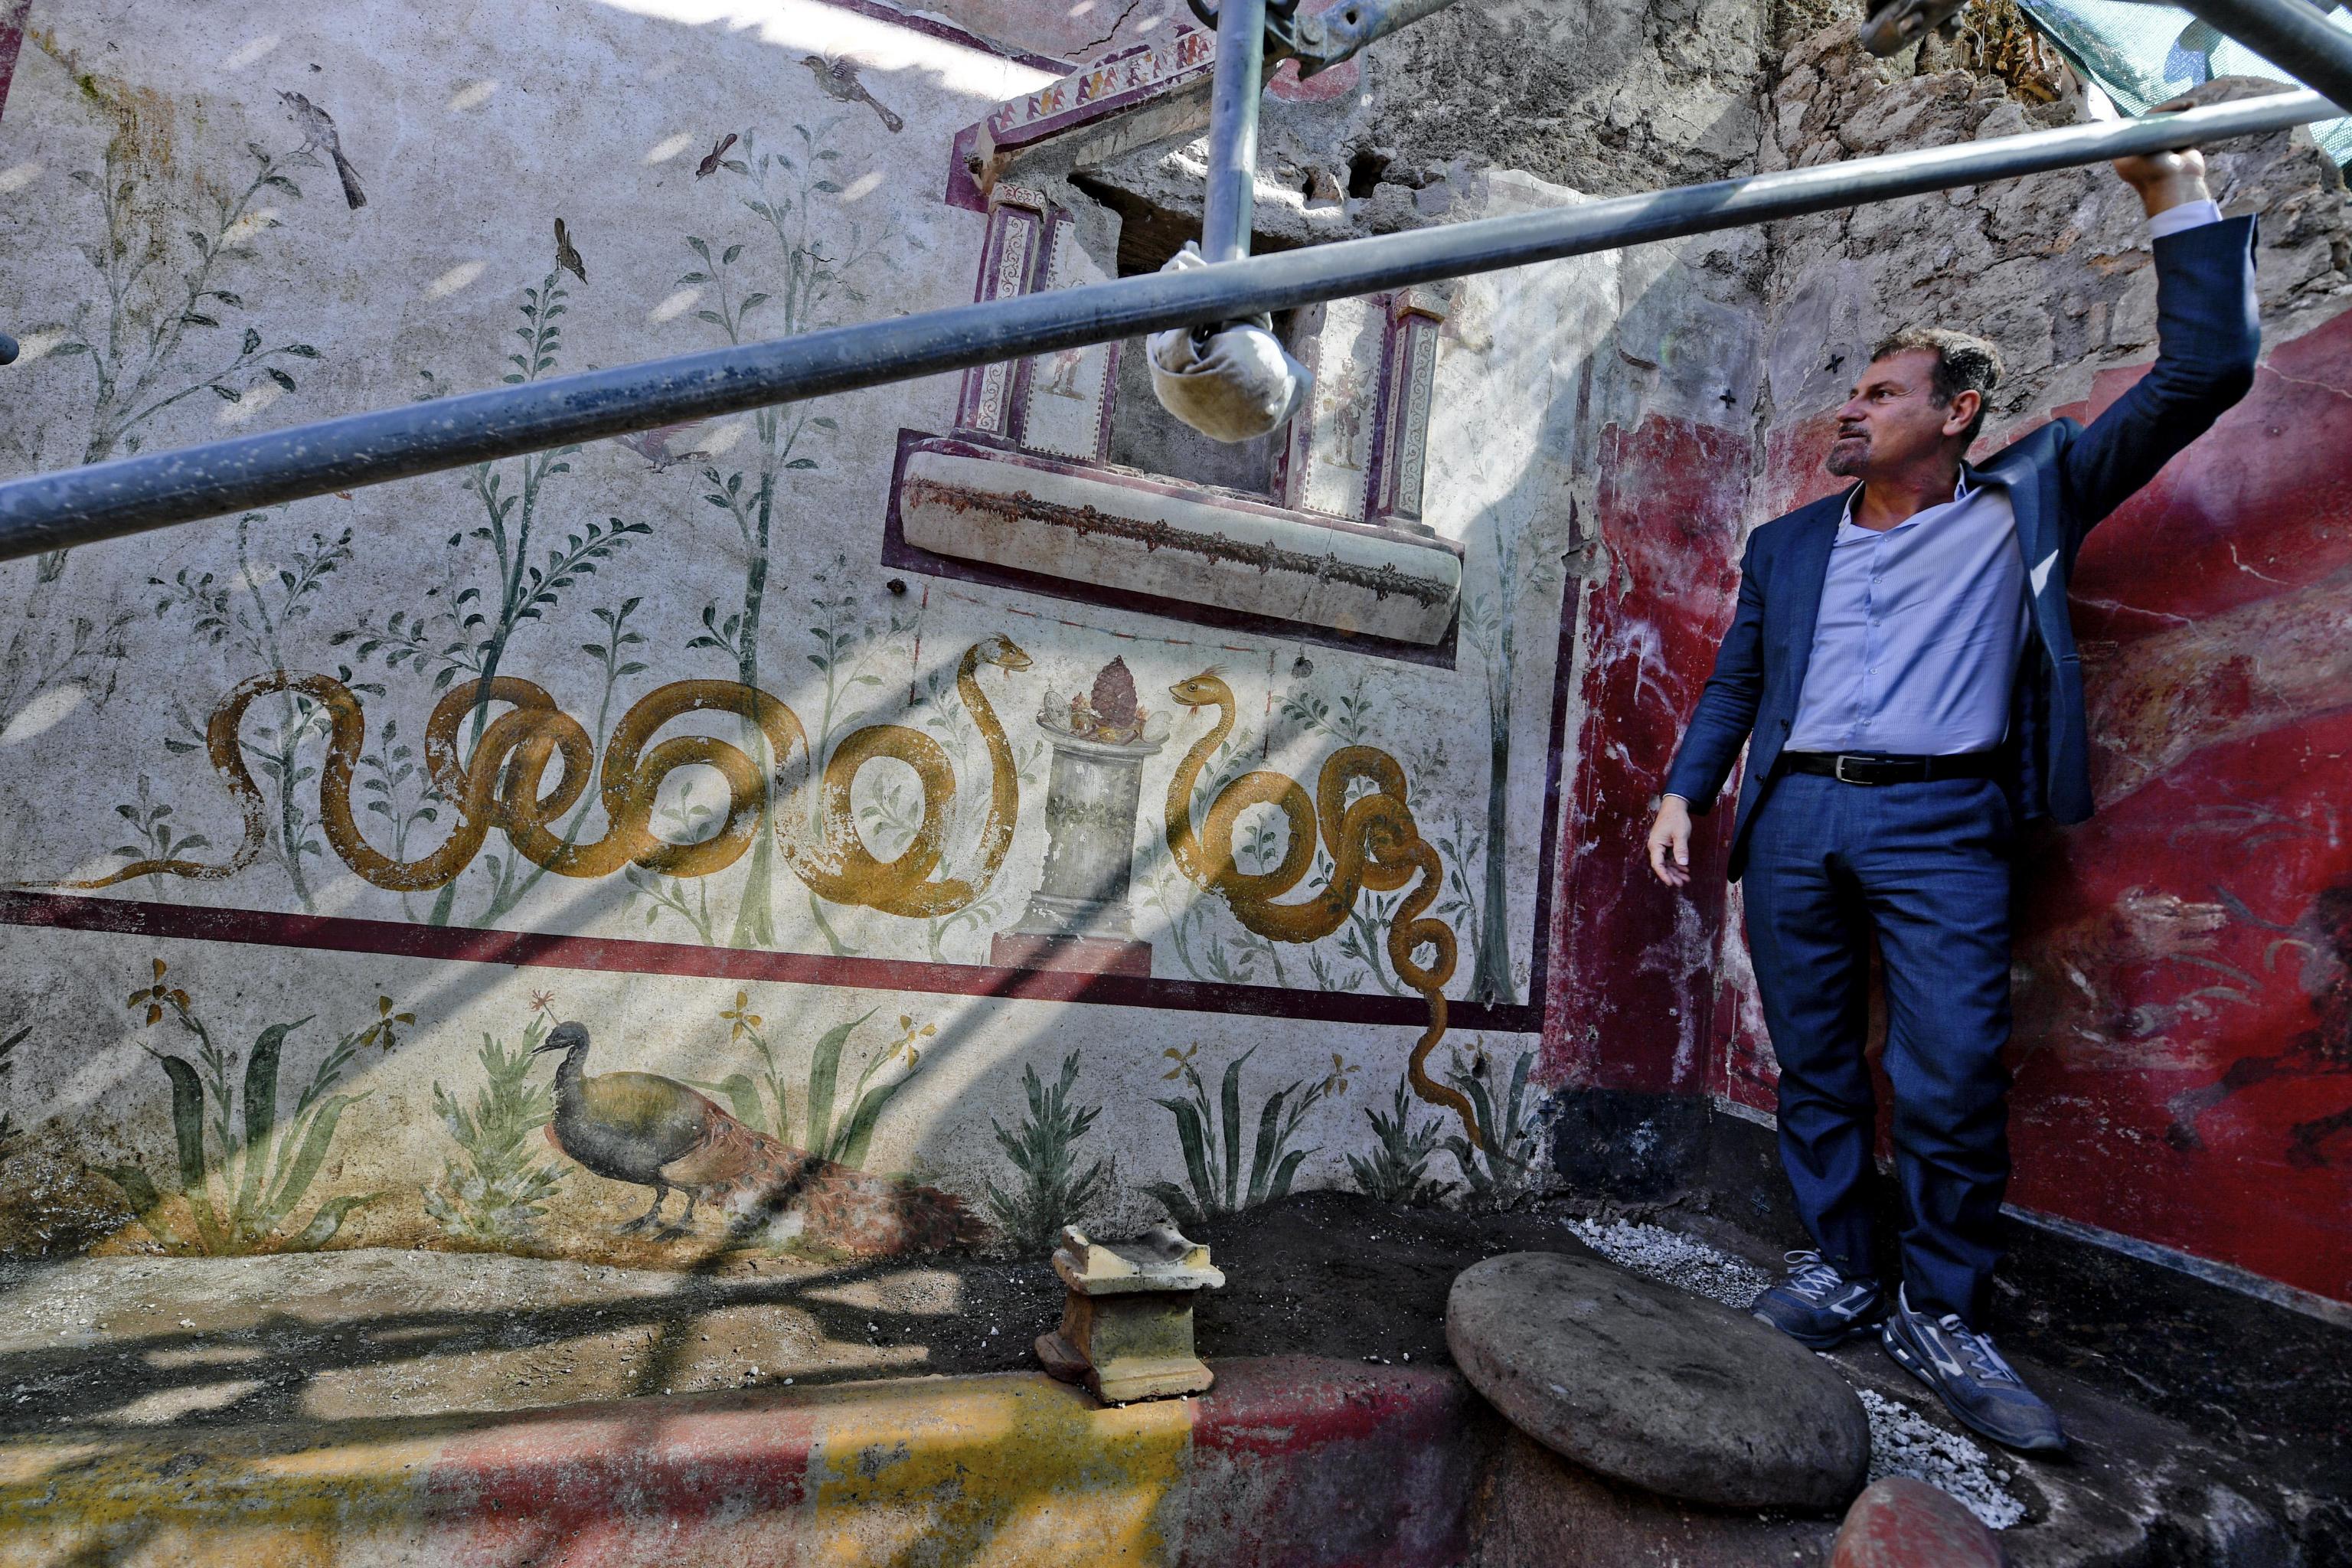 Il direttore generale del Parco archeologico di Pompei, Massimo Osanna mostra gli affreschi del Giardino Incantato